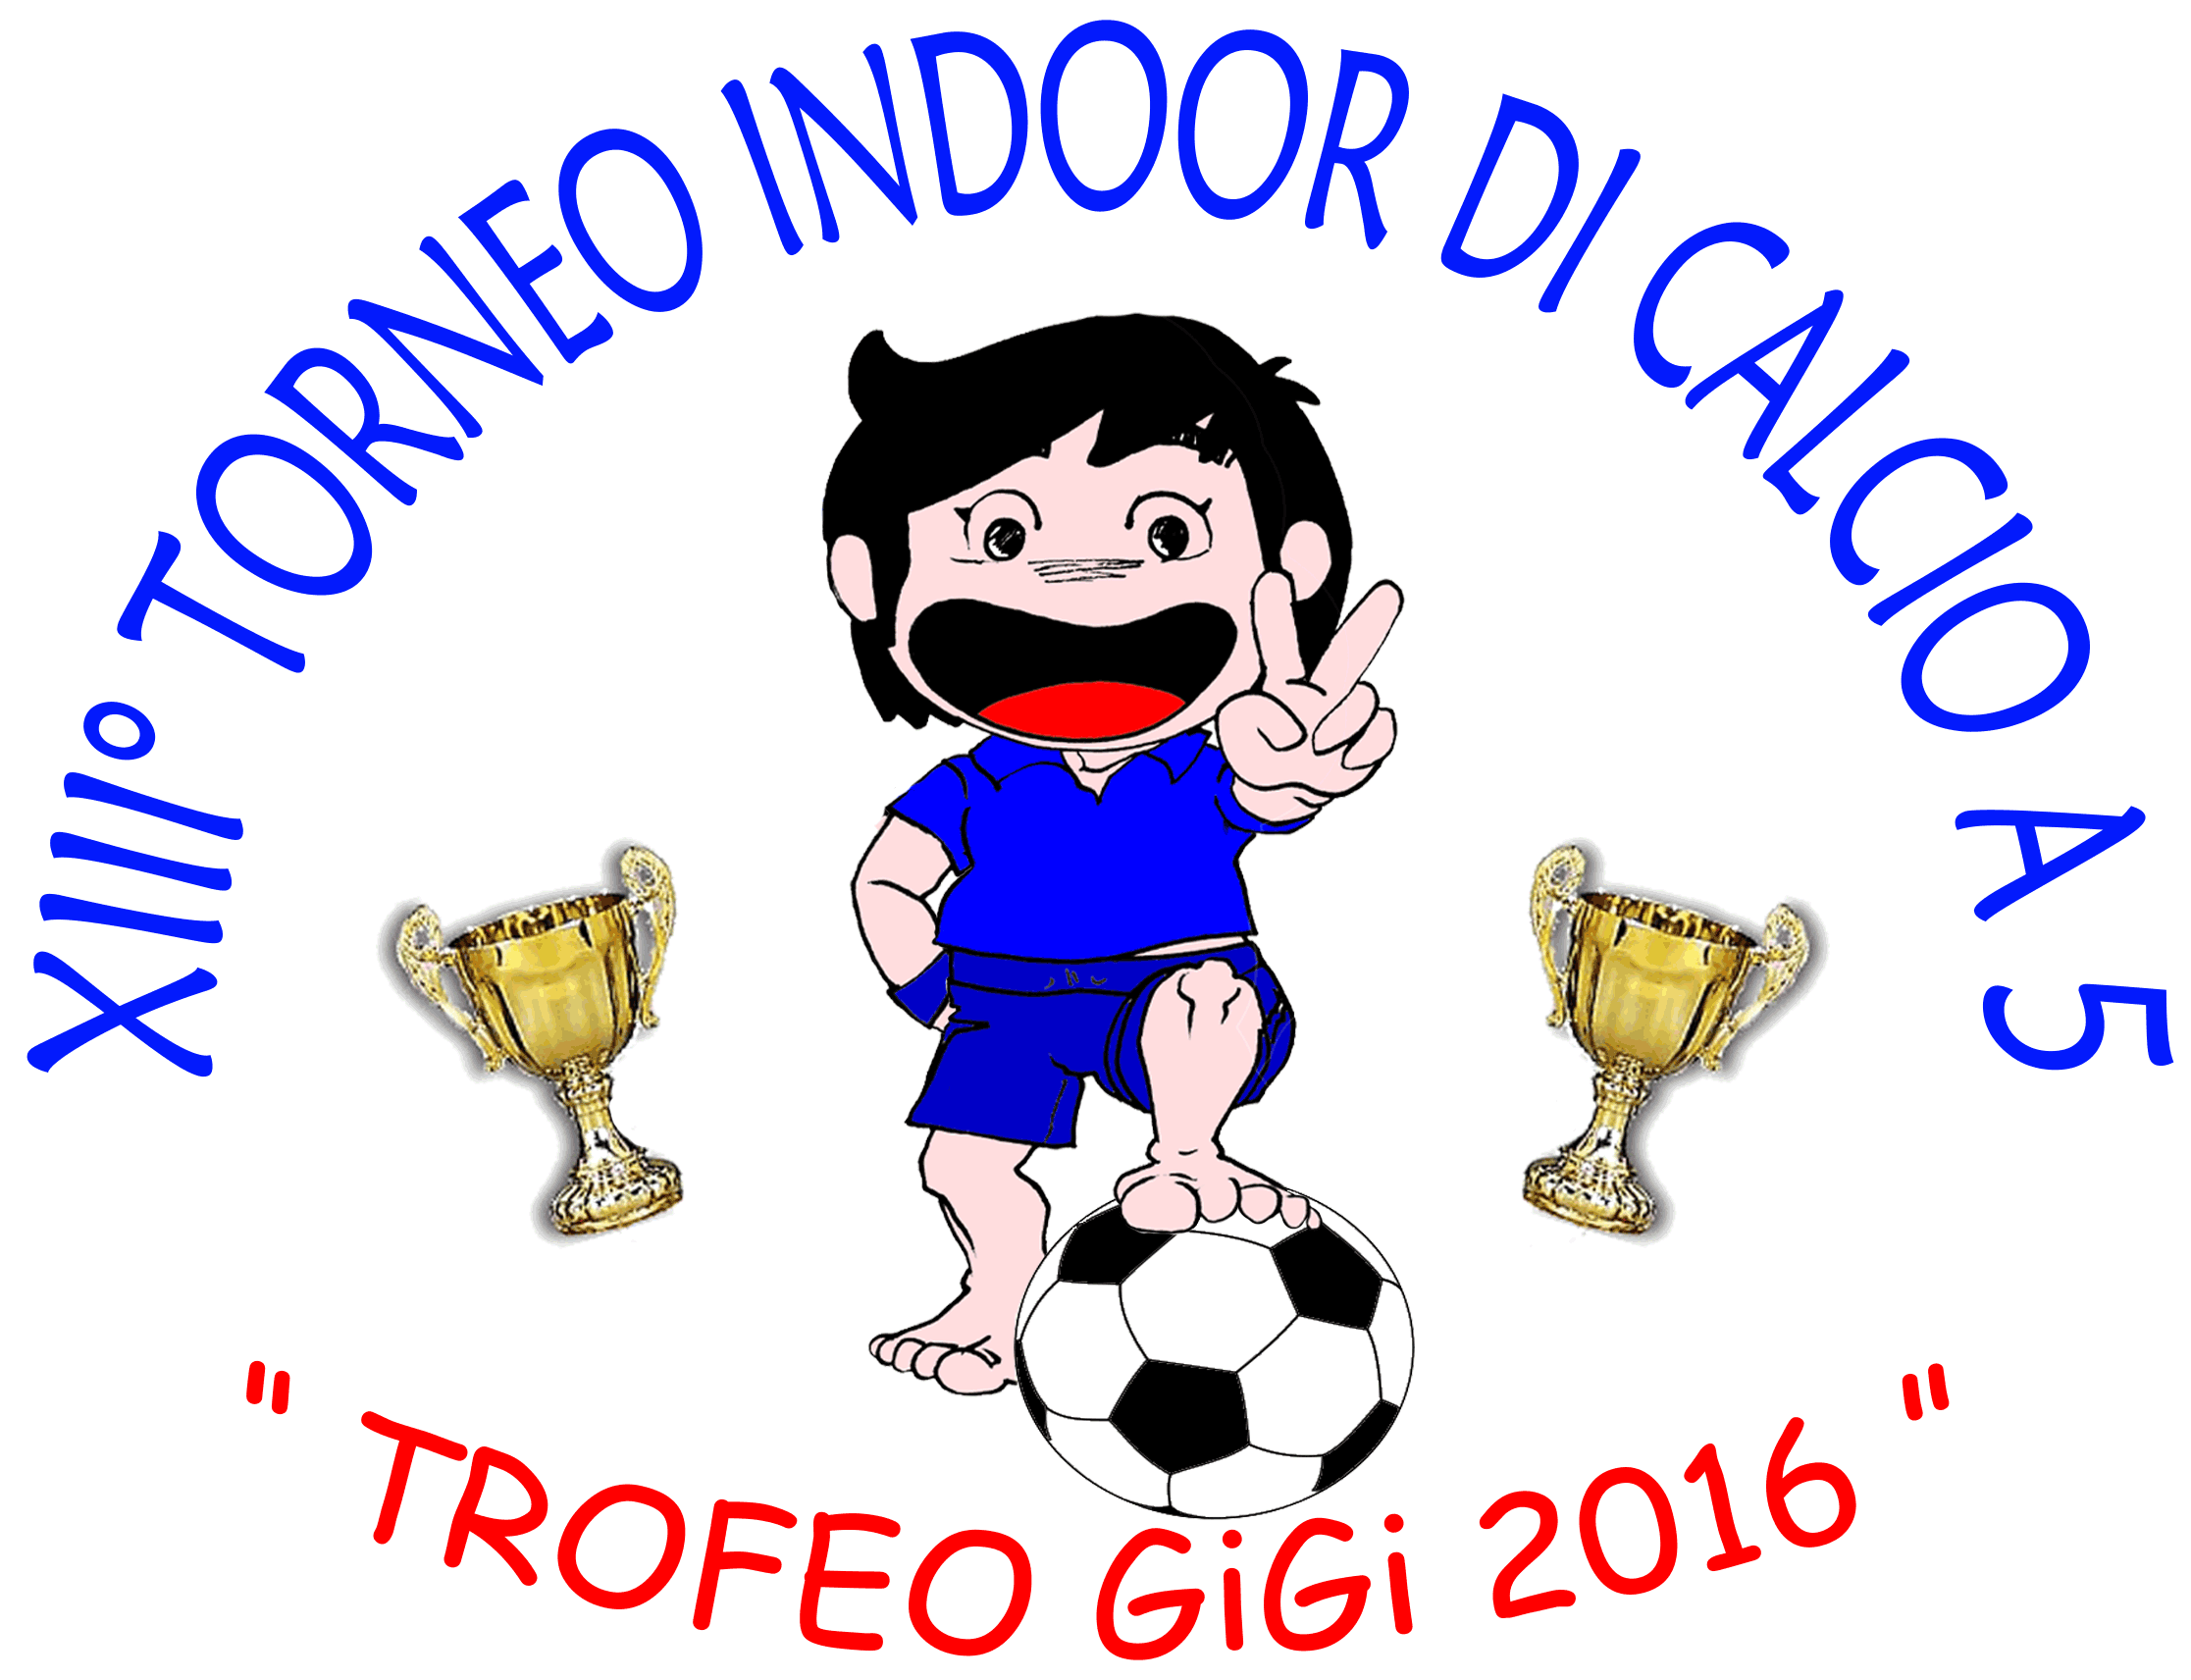 FOTO XIII Torneo di Calcetto a 5 Trofeo GiGi 2016